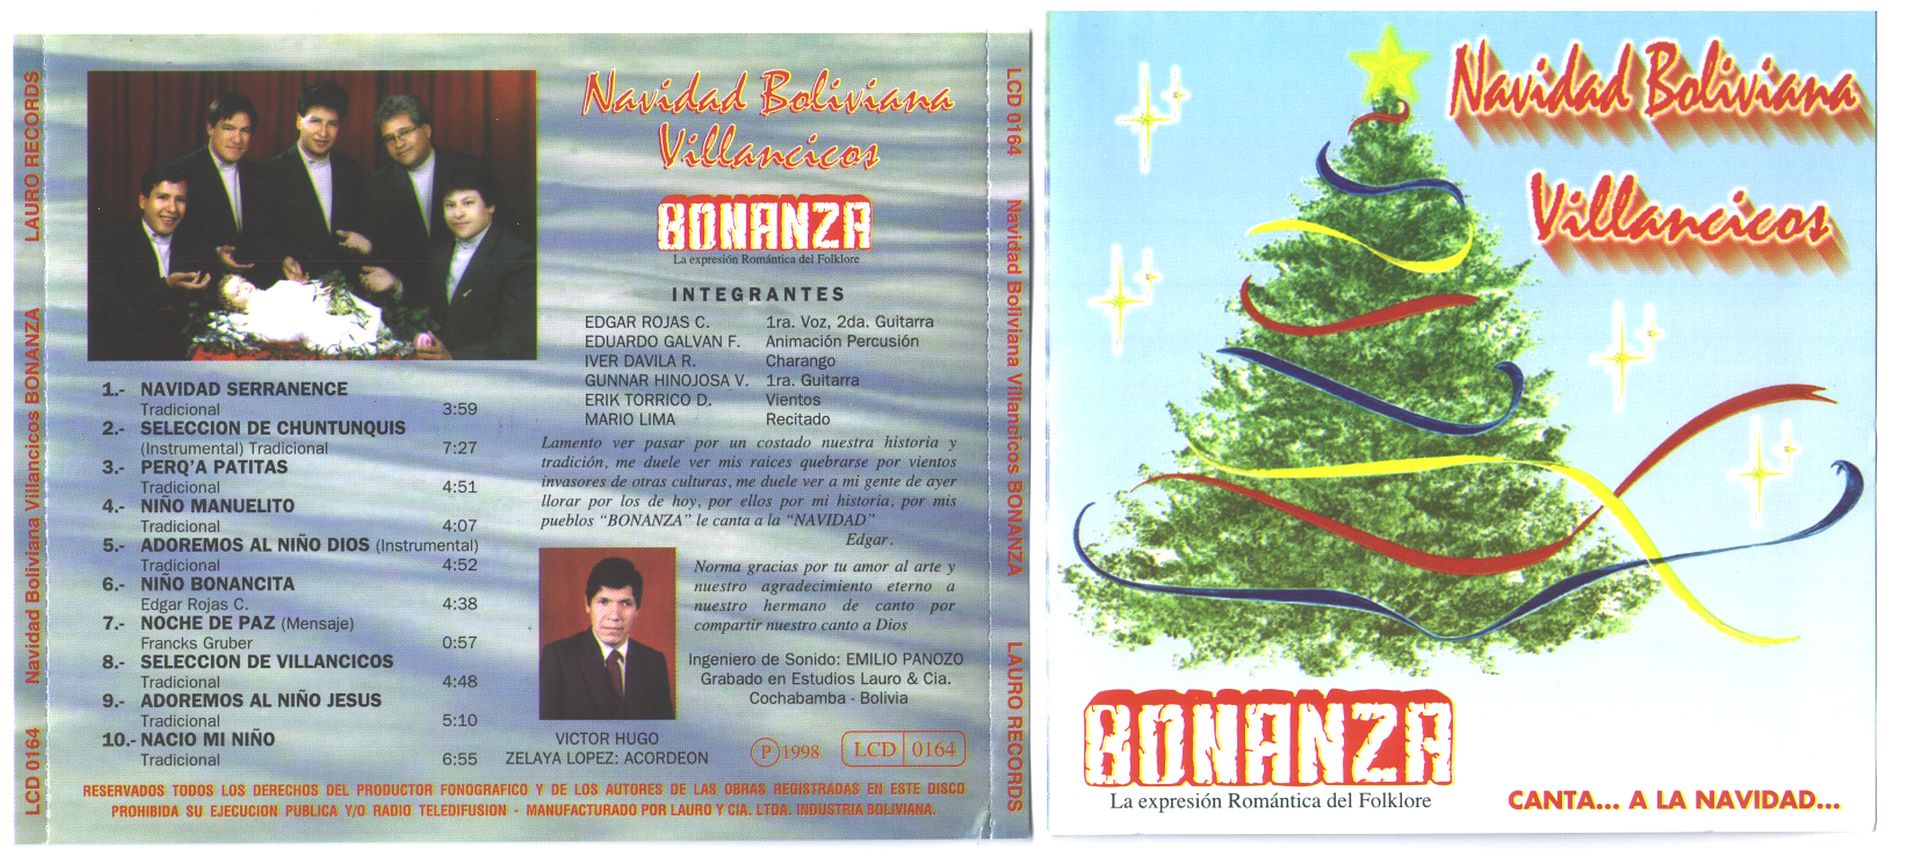 Portada01 - Bonanza - Navidad boliviana. Villancicos (1998)